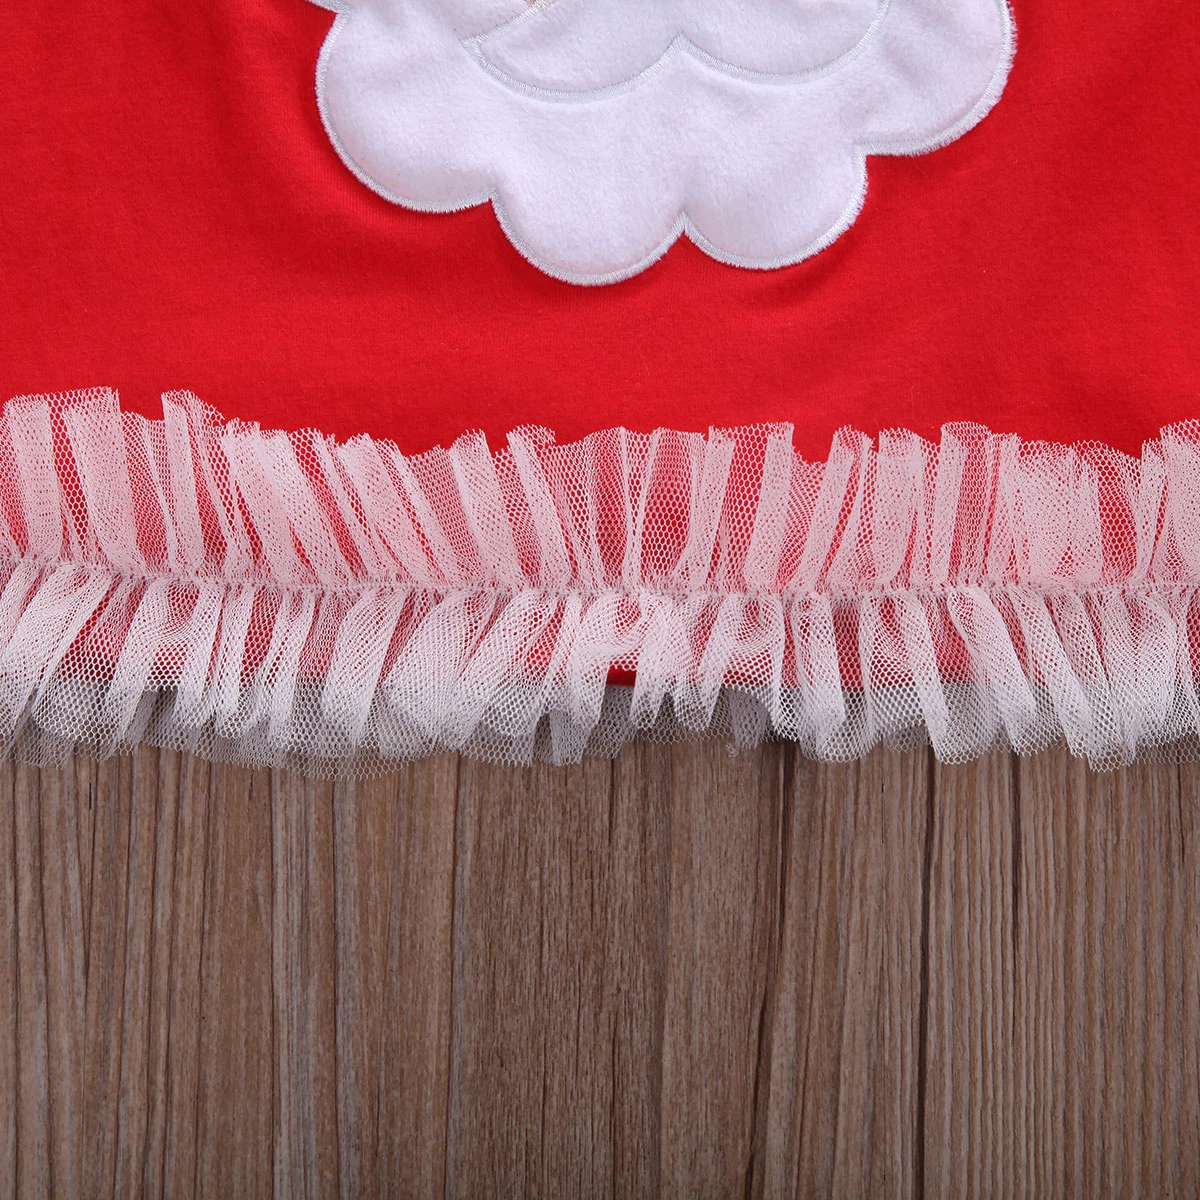 Прямая поставка; рождественское красное платье Санта-Клауса для малышей; рождественское праздничное платье-туника для новорожденных девочек; повязка на голову; Рождественский комплект детского снаряжения